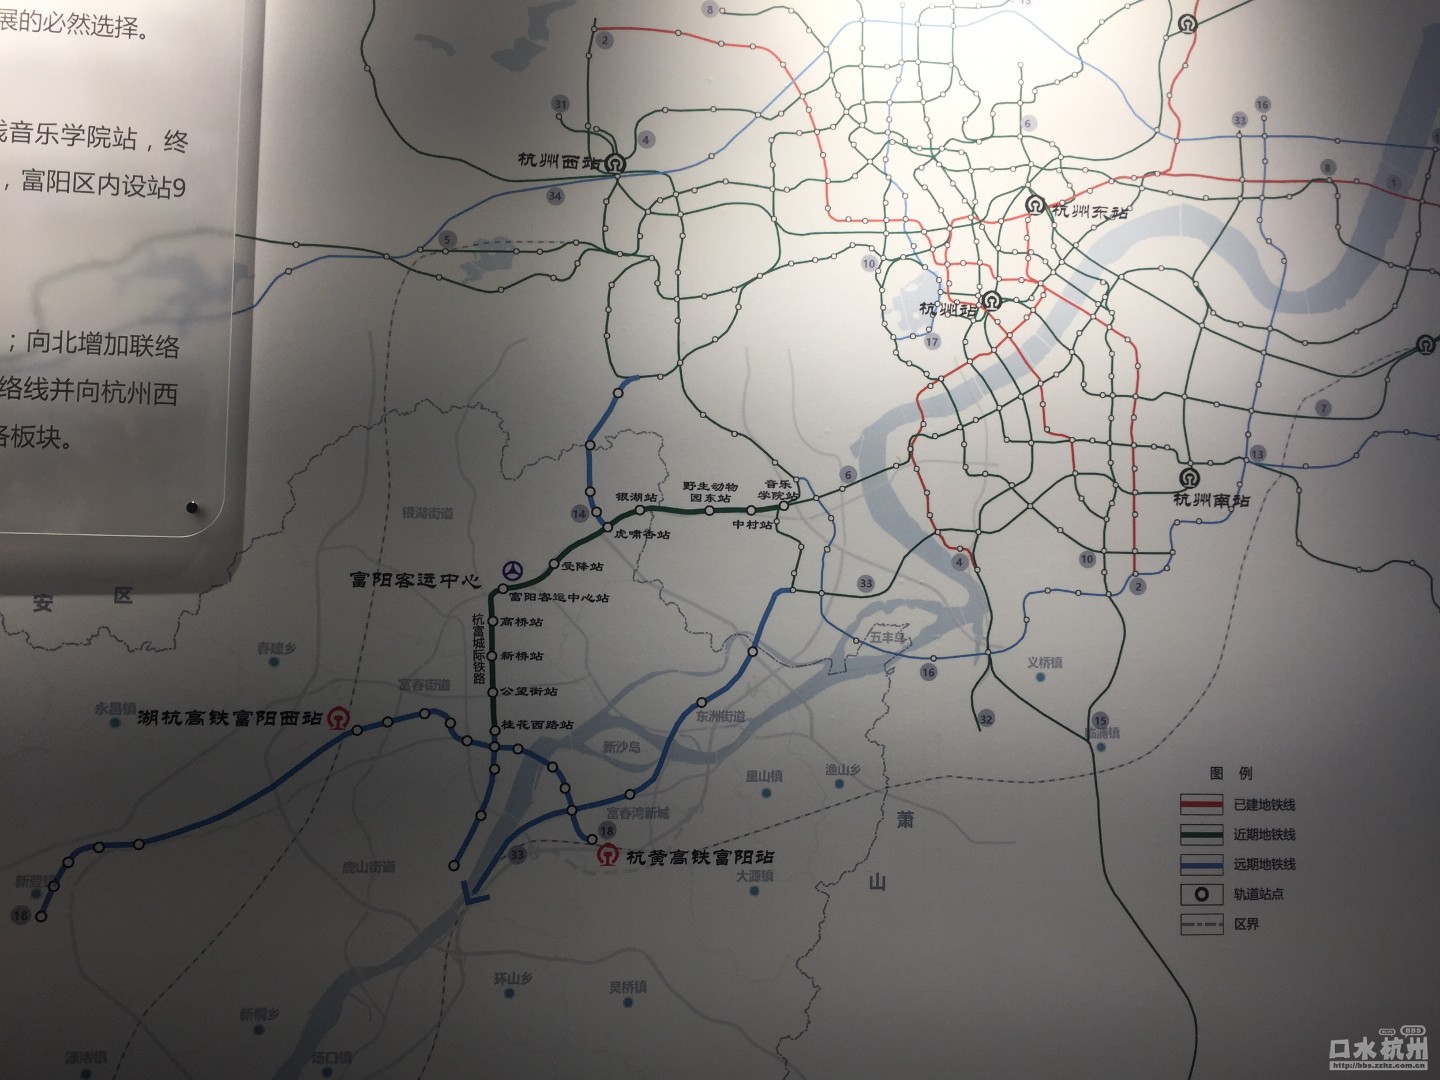 城市规划富阳规划展示馆的图地铁规划远期